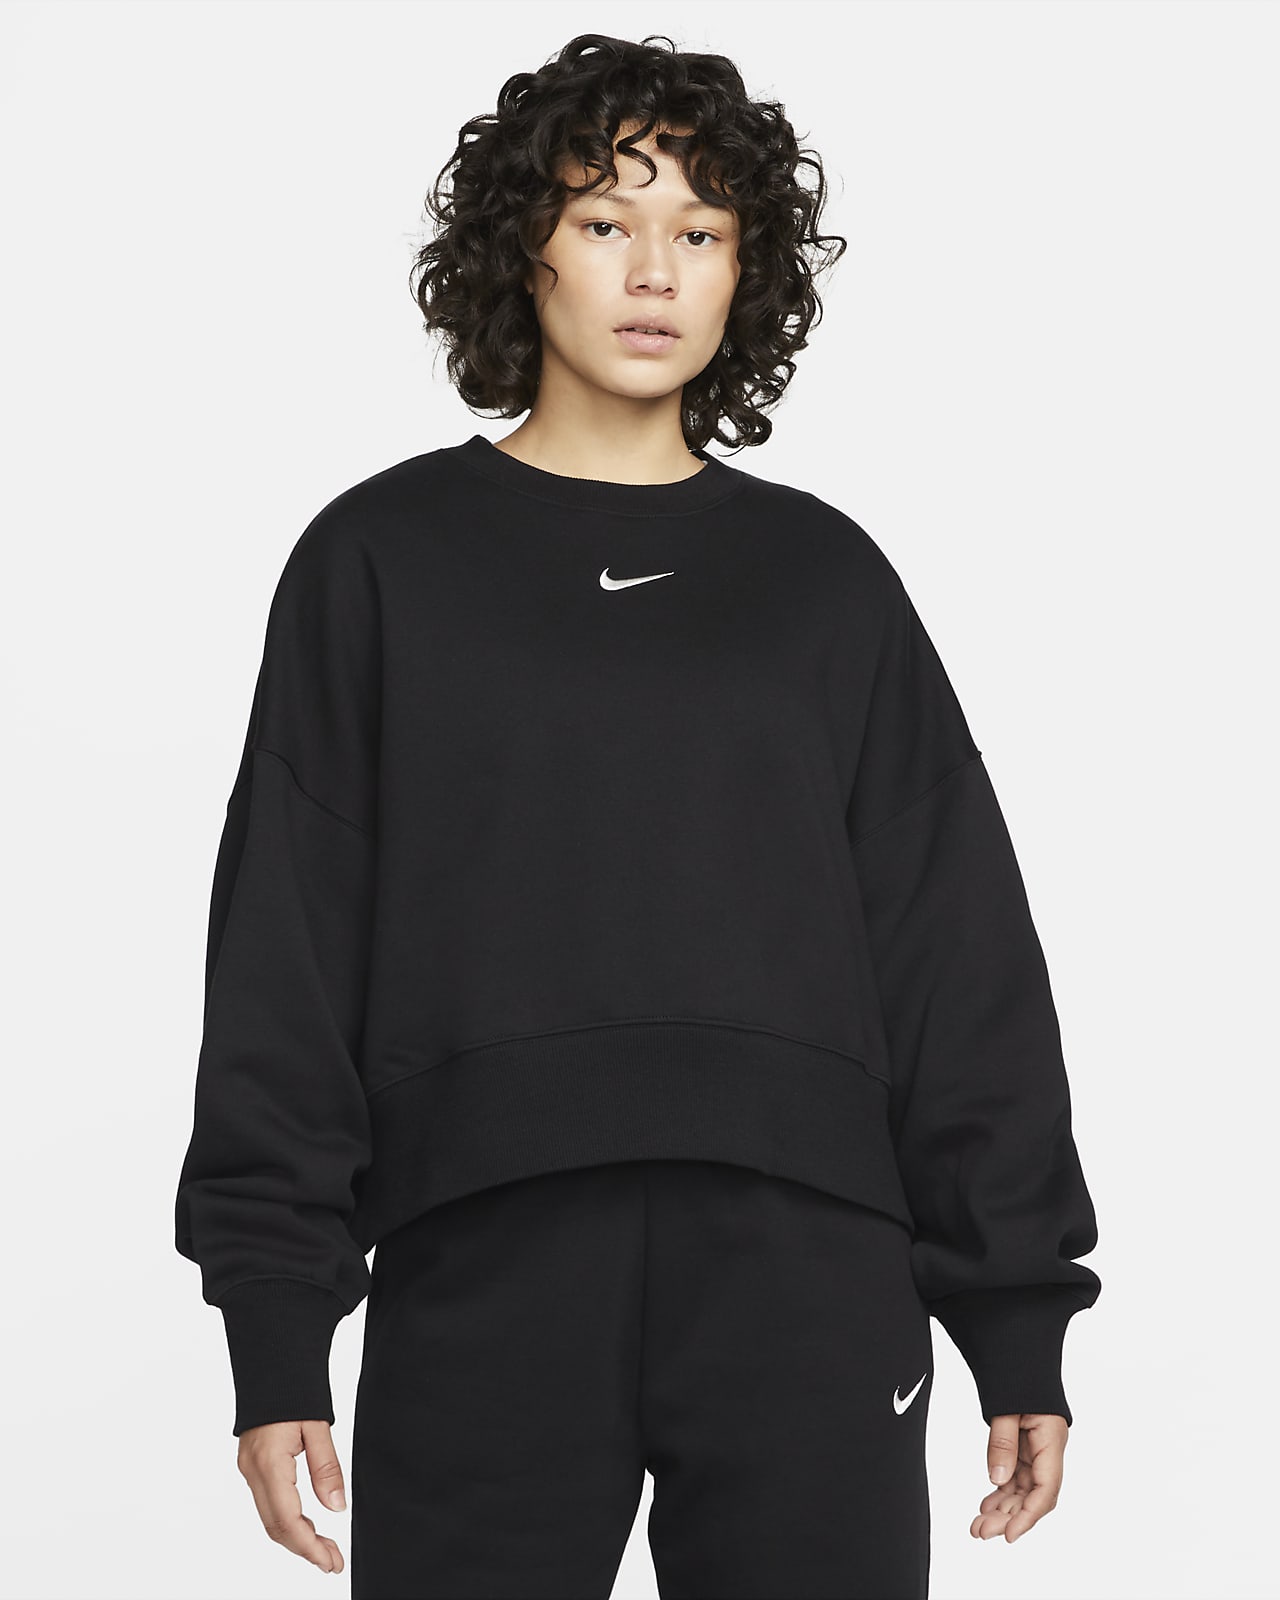 Nike Sportswear Phoenix Fleece Ekstra Bol Kesimli Sıfır Yakalı Kadın Sweatshirt'ü